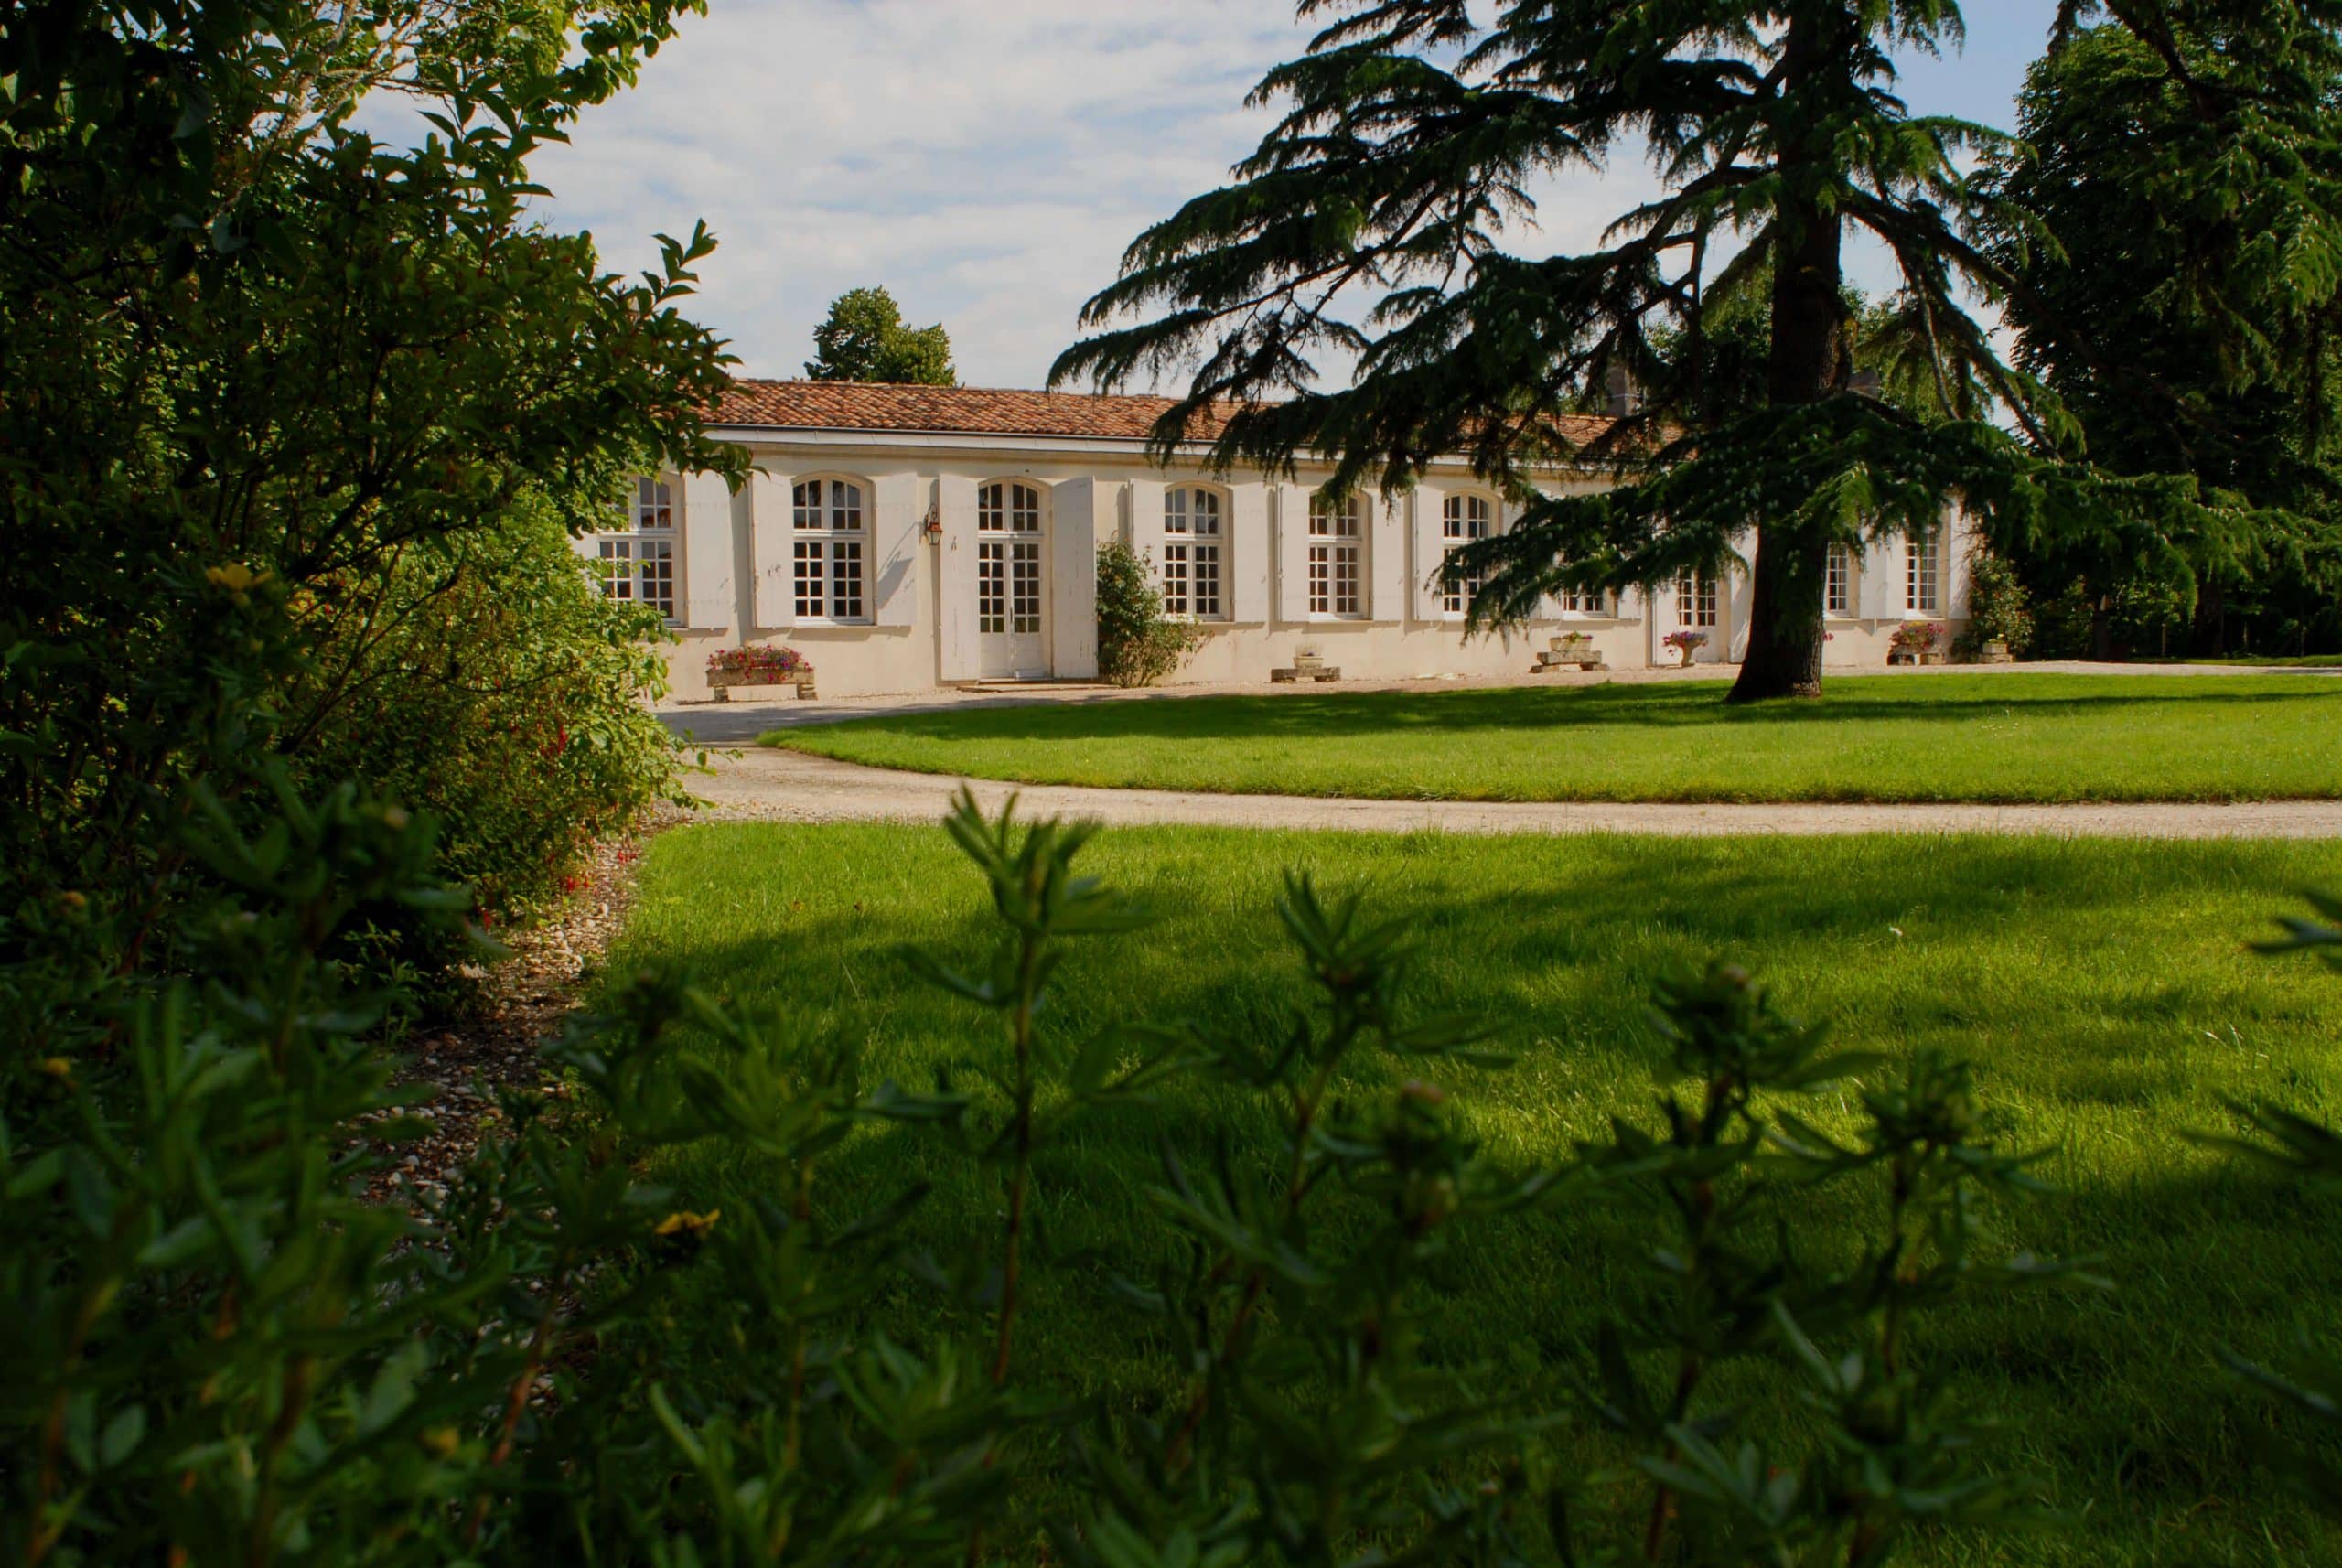 Château Poujeaux